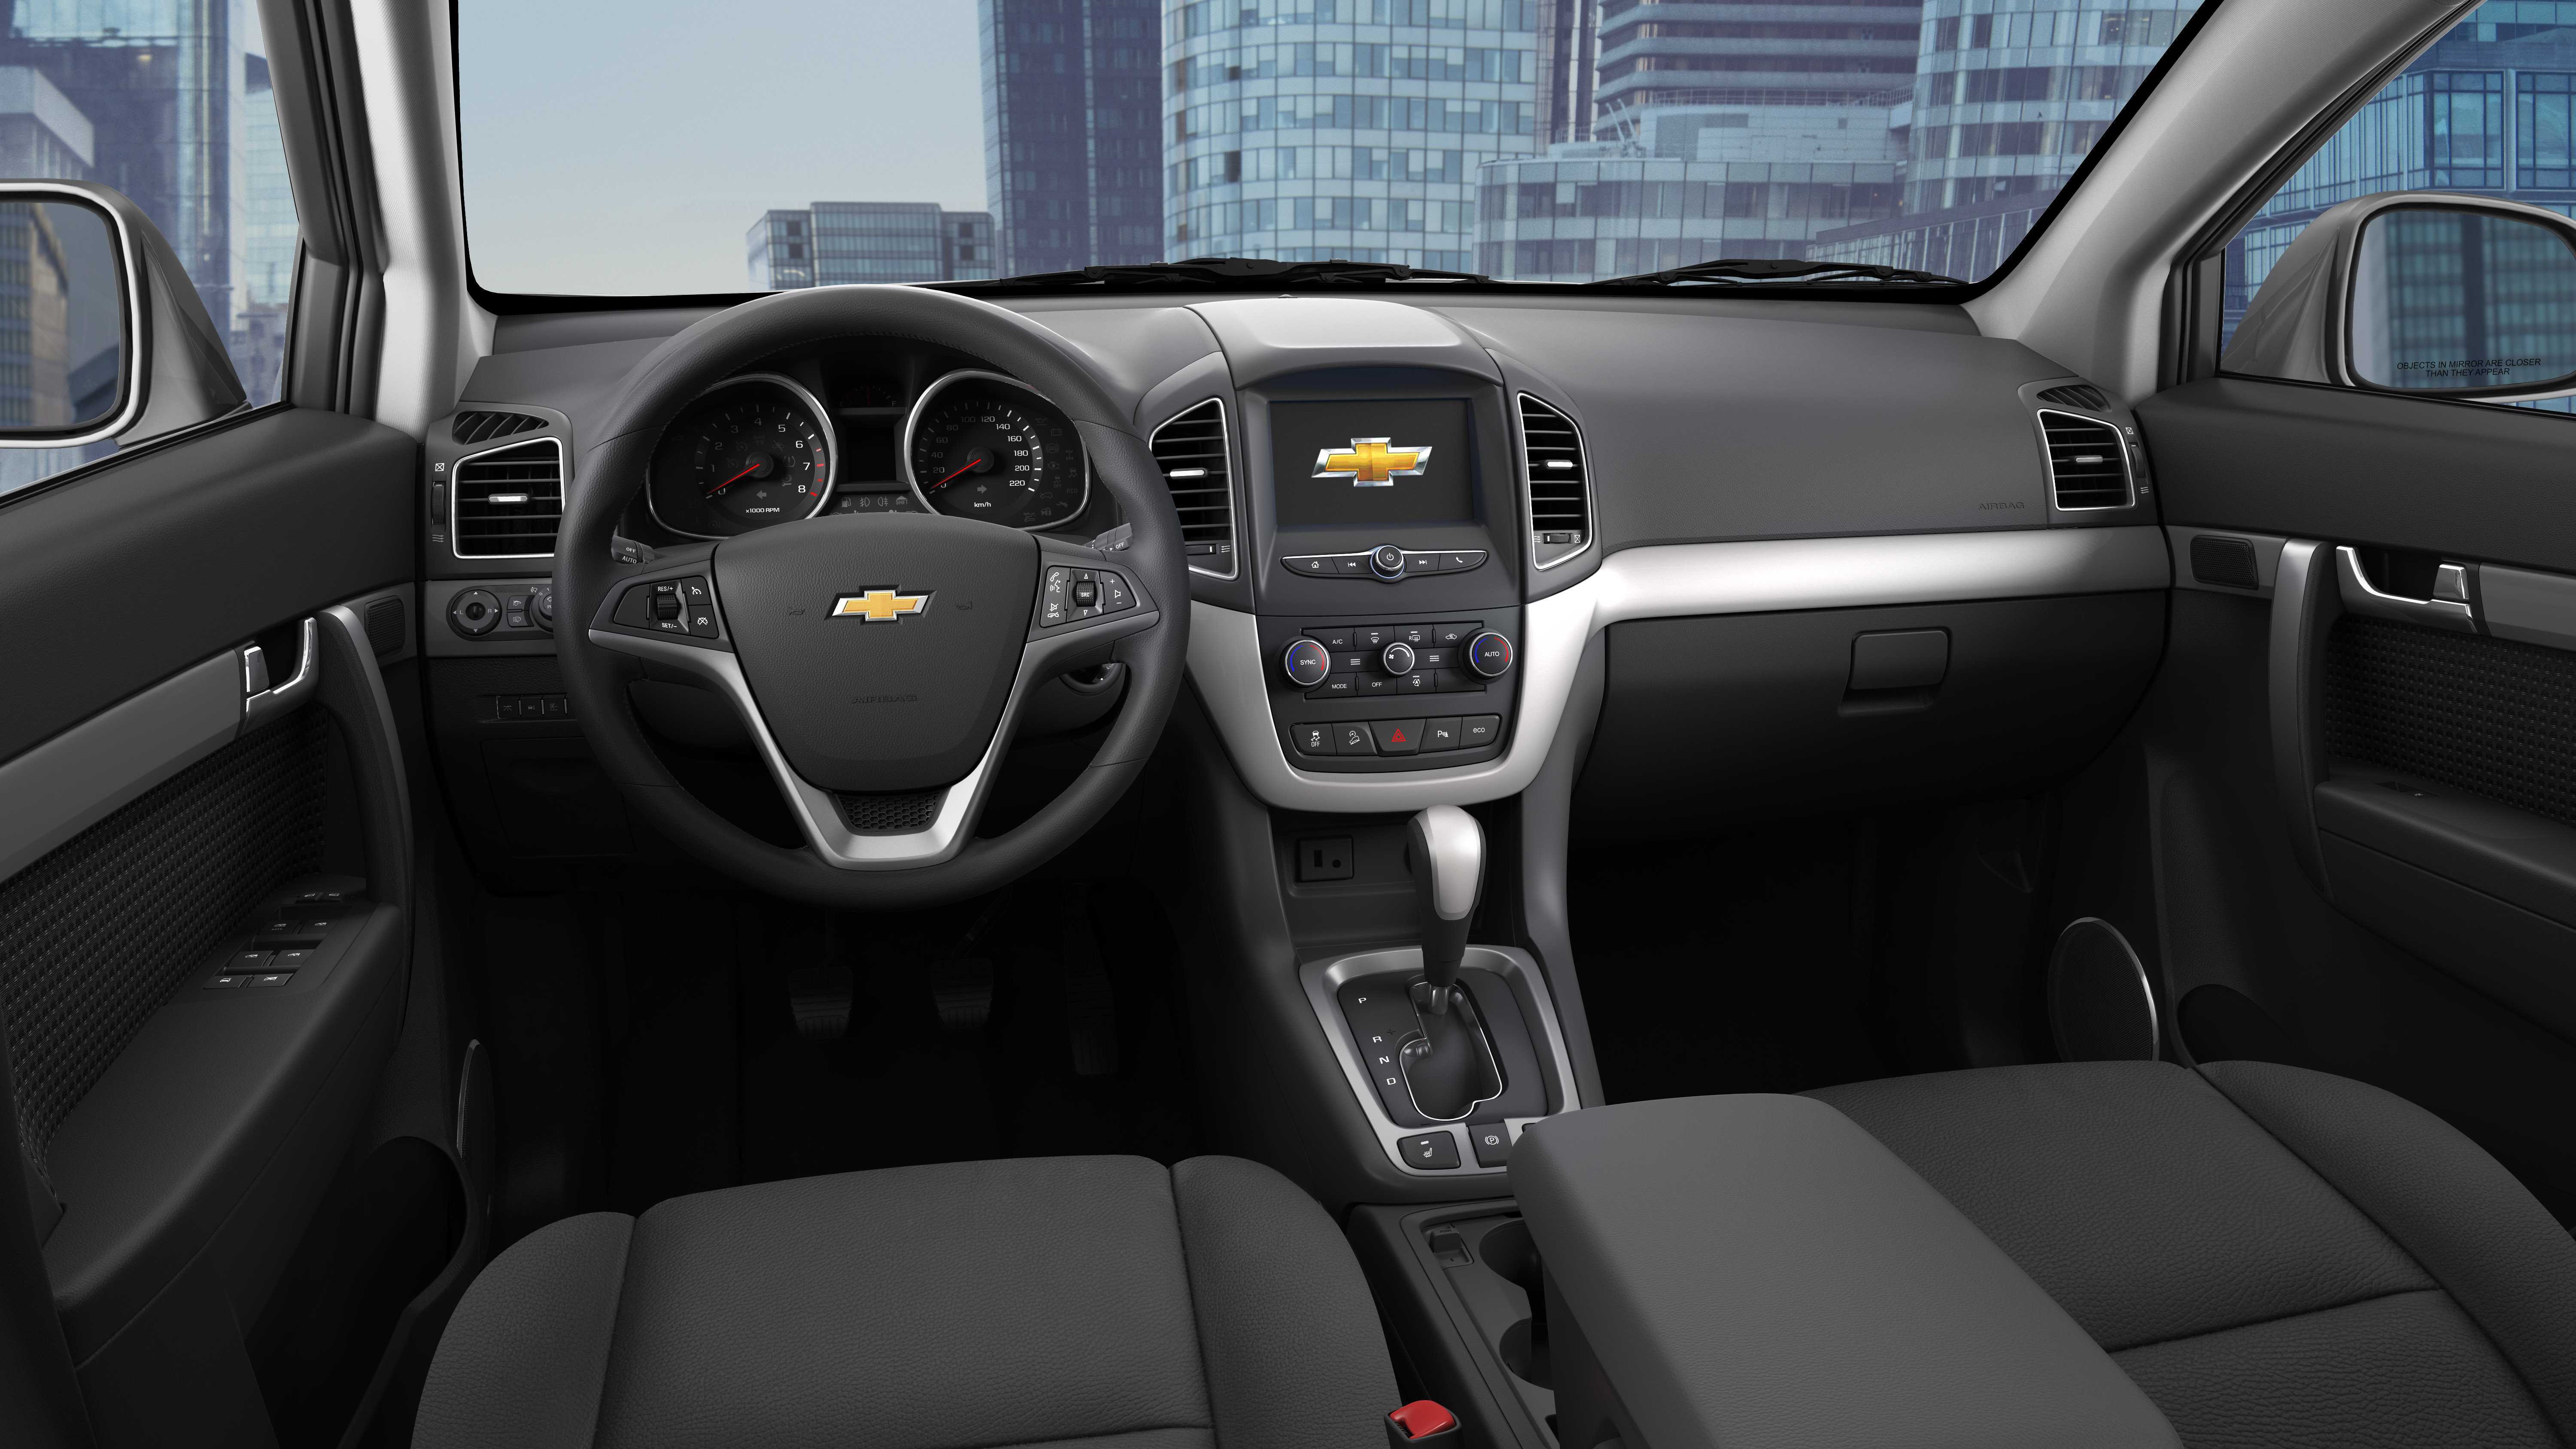 Chevrolet Captiva facelift junio 2016 (12)